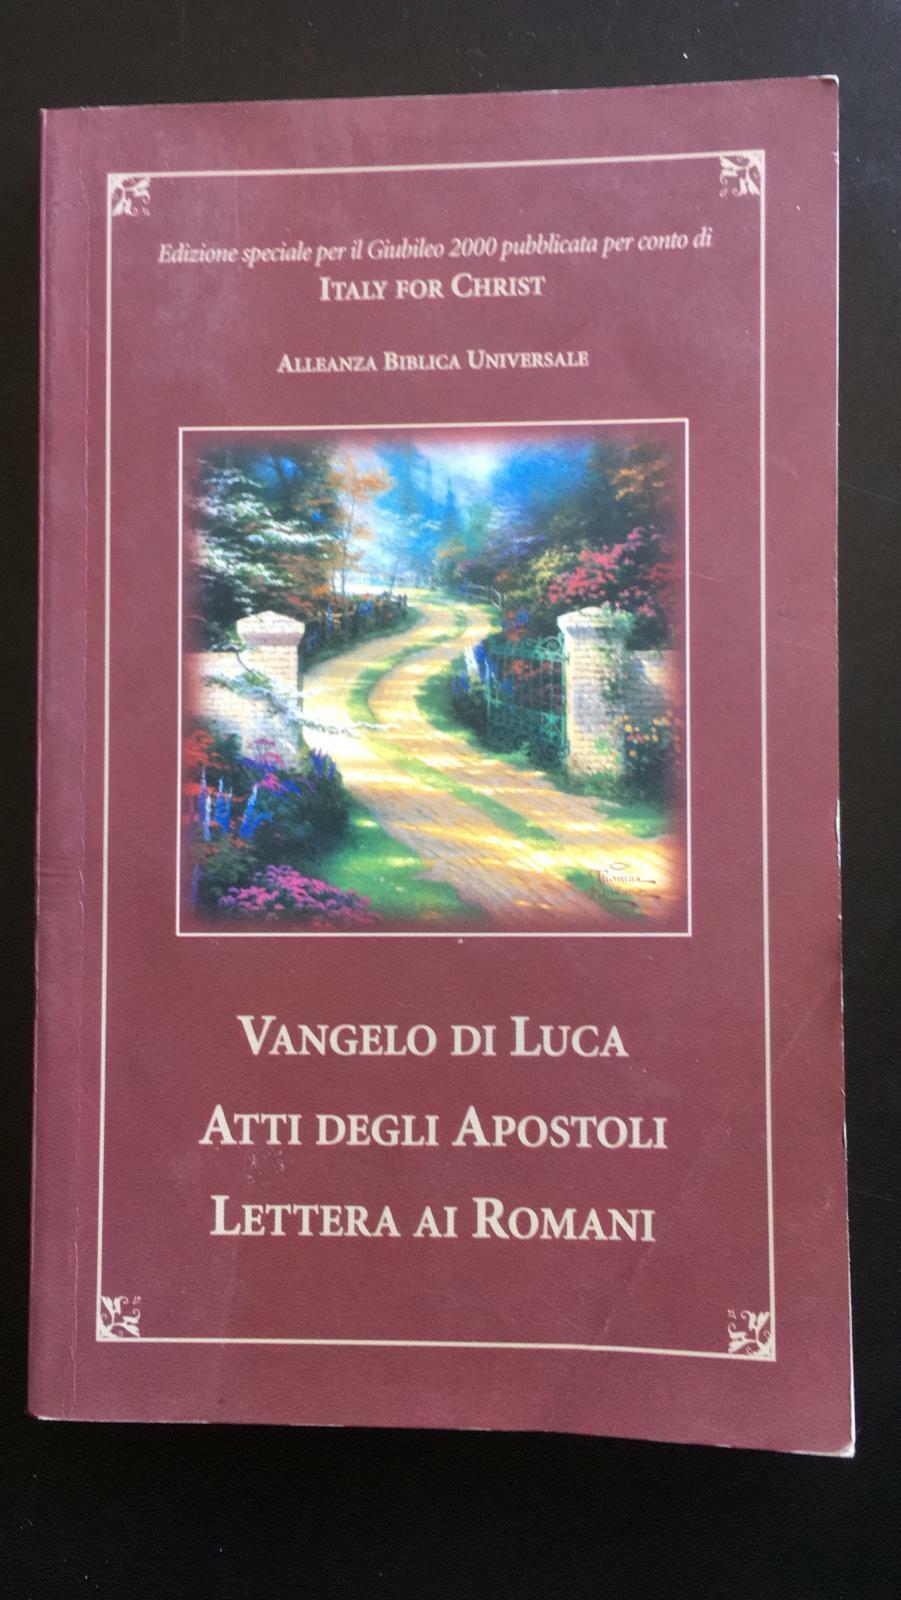 Vangelo di Luca Atti degli Apostoli Lettera ai Romani - Aa.vv,  1999 - P